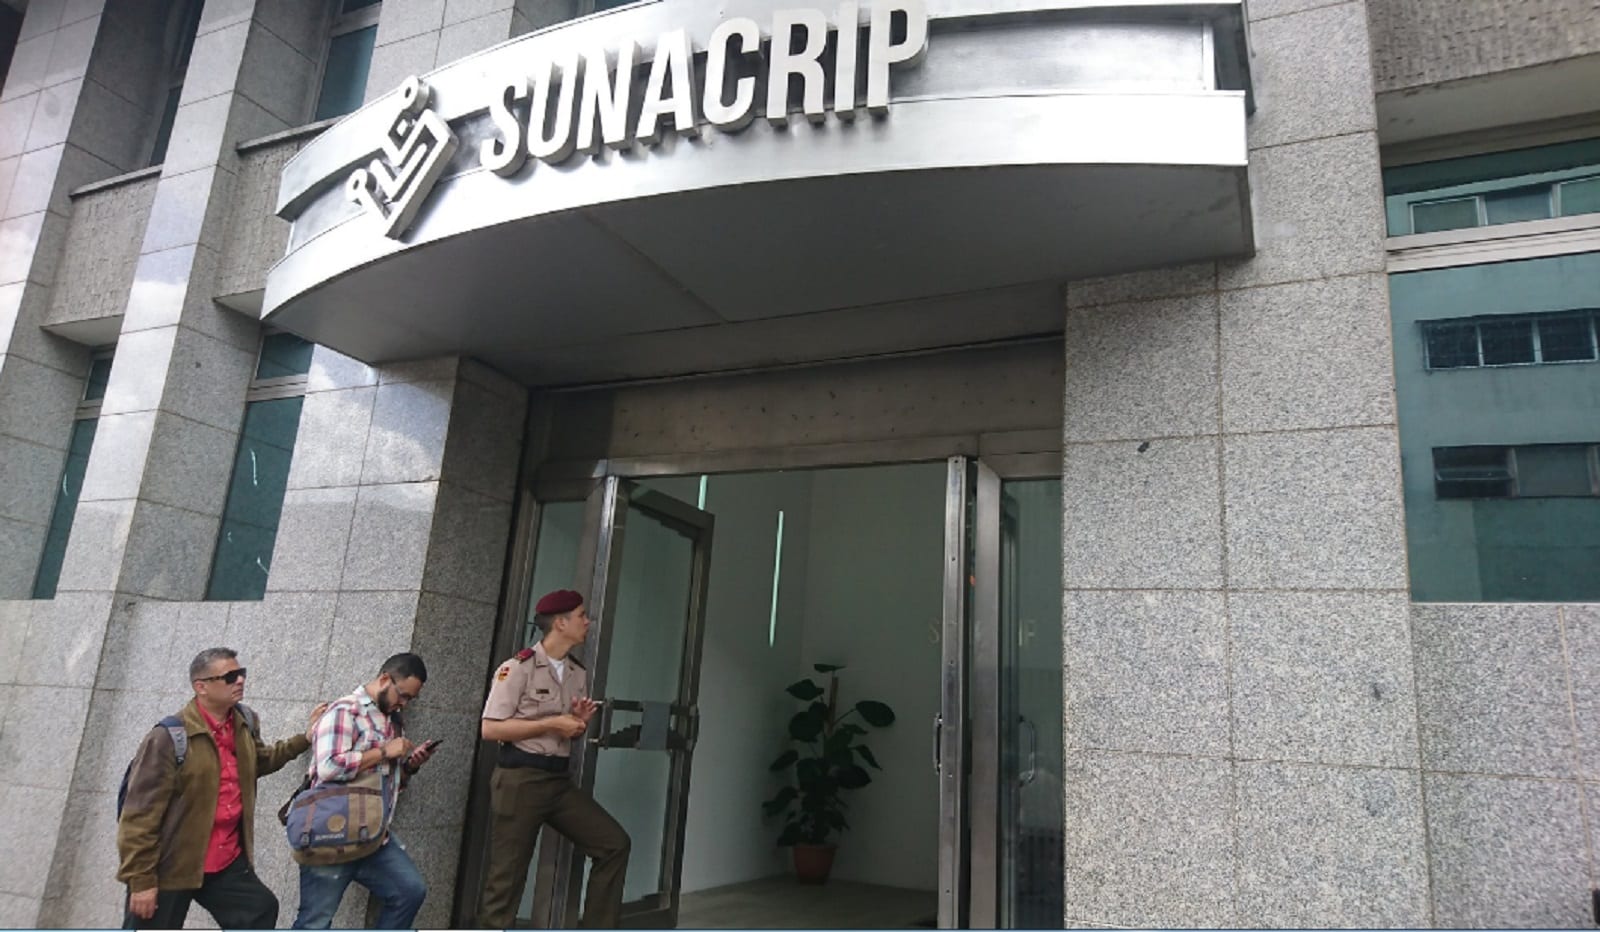 Qué se sabe sobre la reestructuración de la Sunacrip?